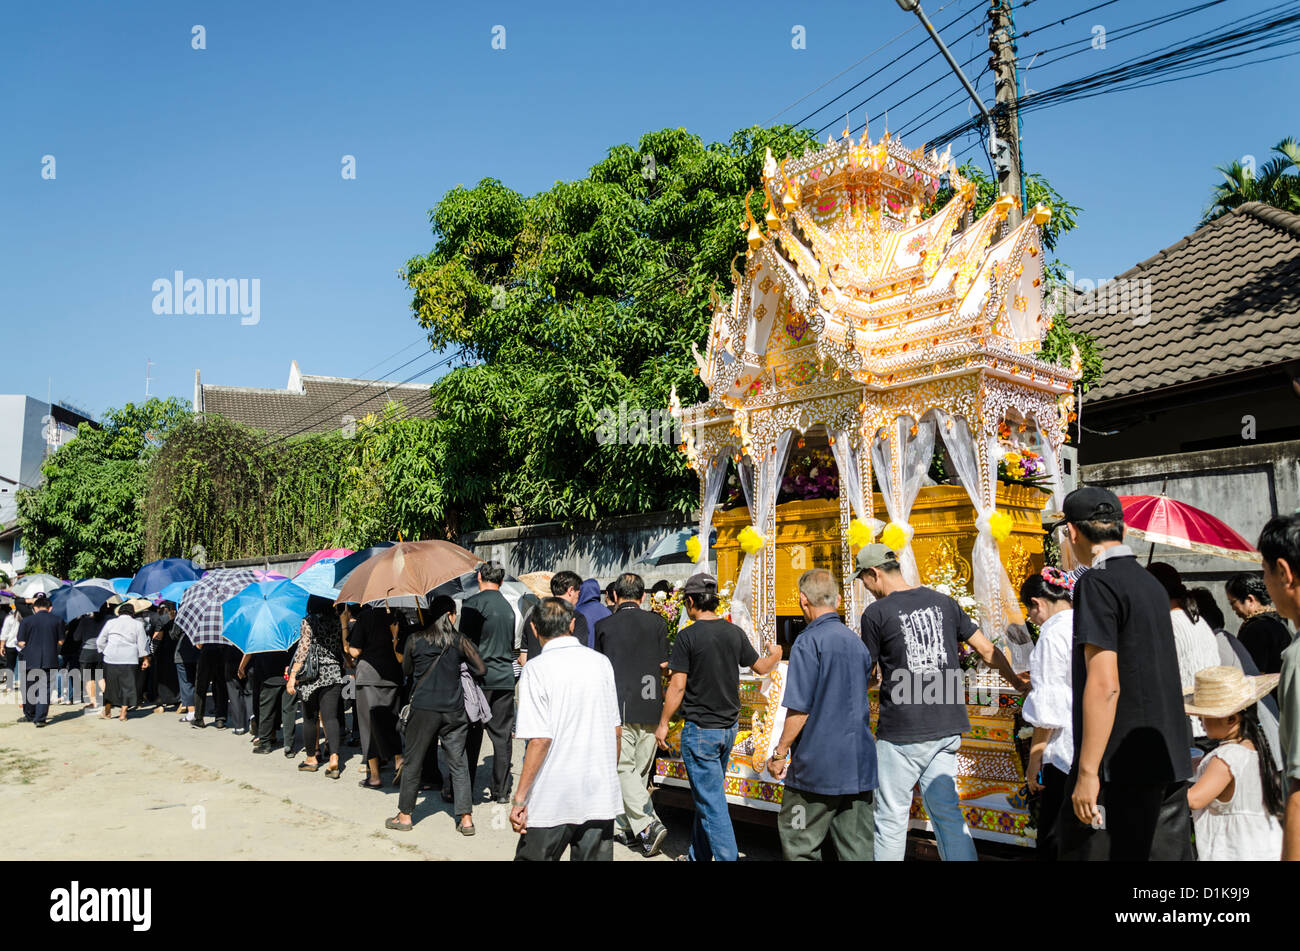 Buddista corteo funebre processione con grande galleggiante che porta il corpo morto e molte persone a piedi sulla strada in Chiang Mai Thailandia Foto Stock